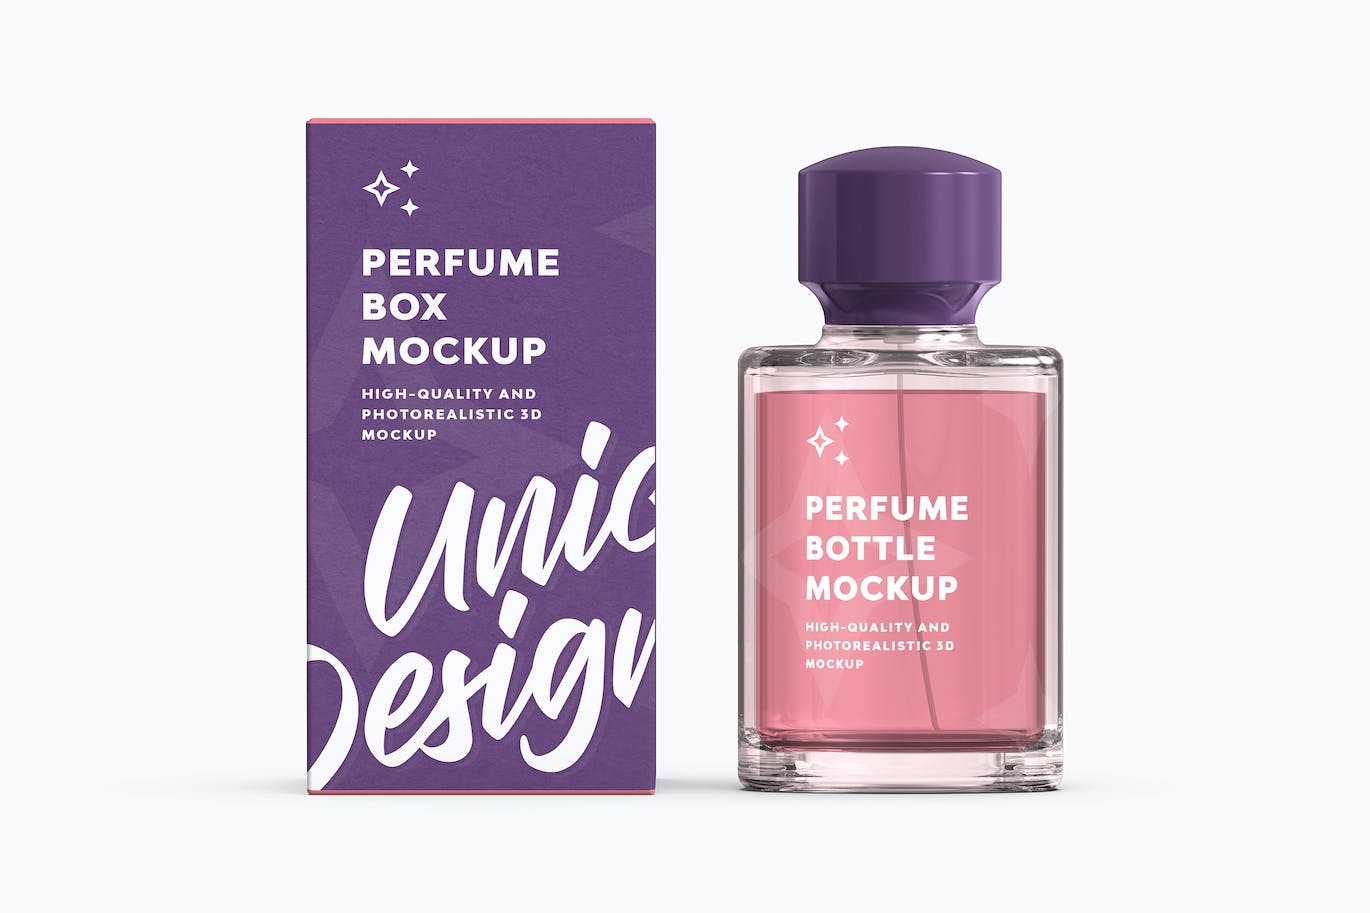 香水瓶和盒子包装预览展示样机 (PSD)